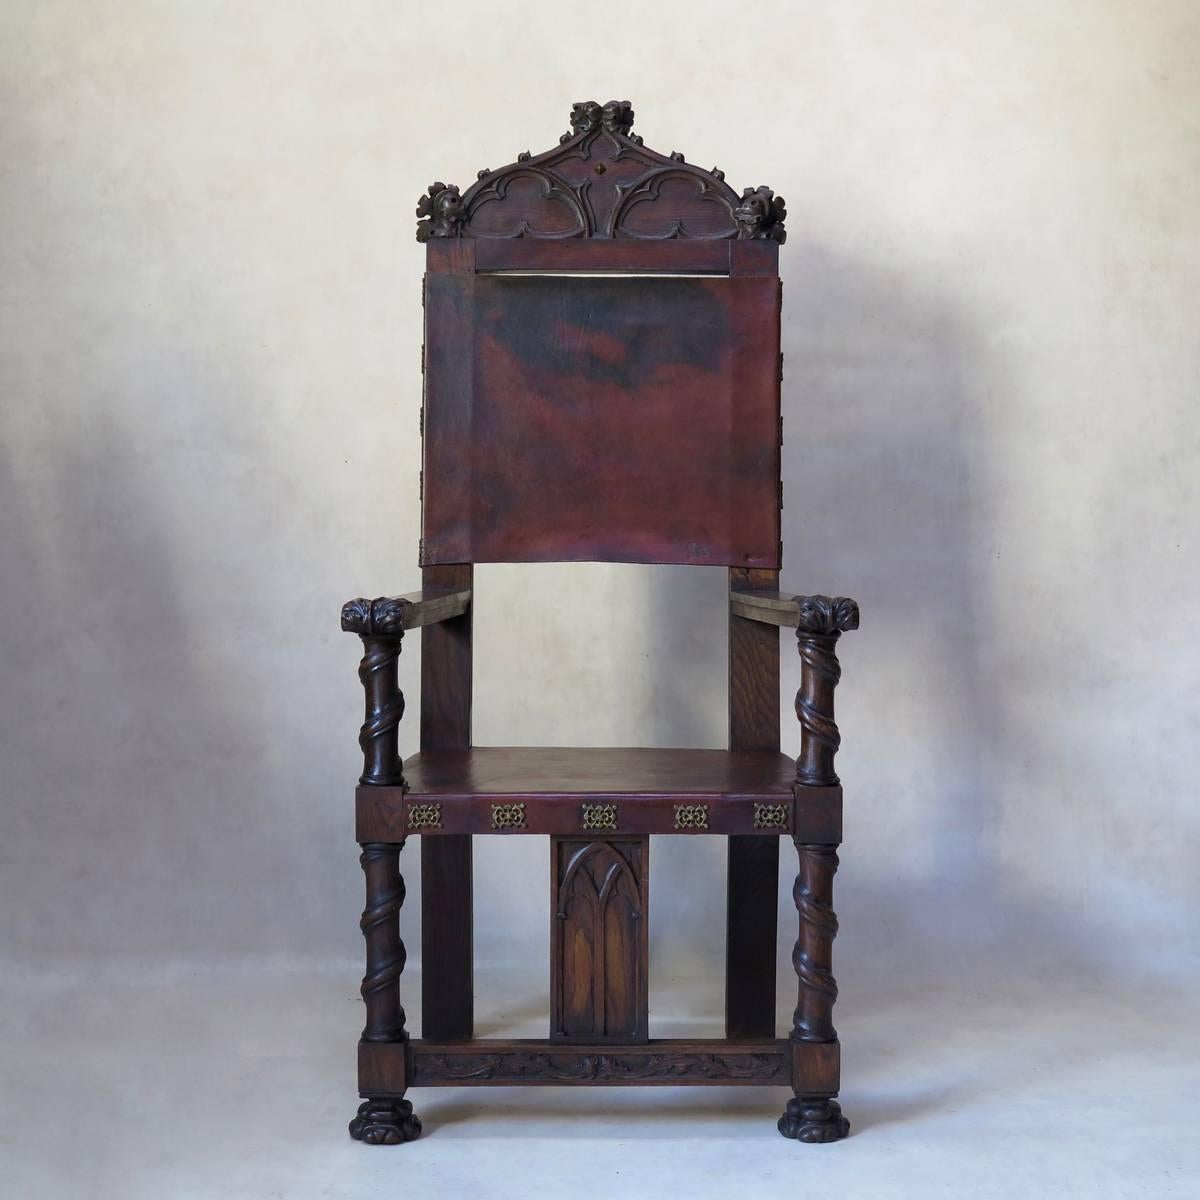 Imposantes Paar Sessel im mittelalterlichen/gotischen Stil, aus geschnitzter Eiche, mit ledernen Sitzen und Rückenlehnen. Verschnörkelte Messingverzierung.